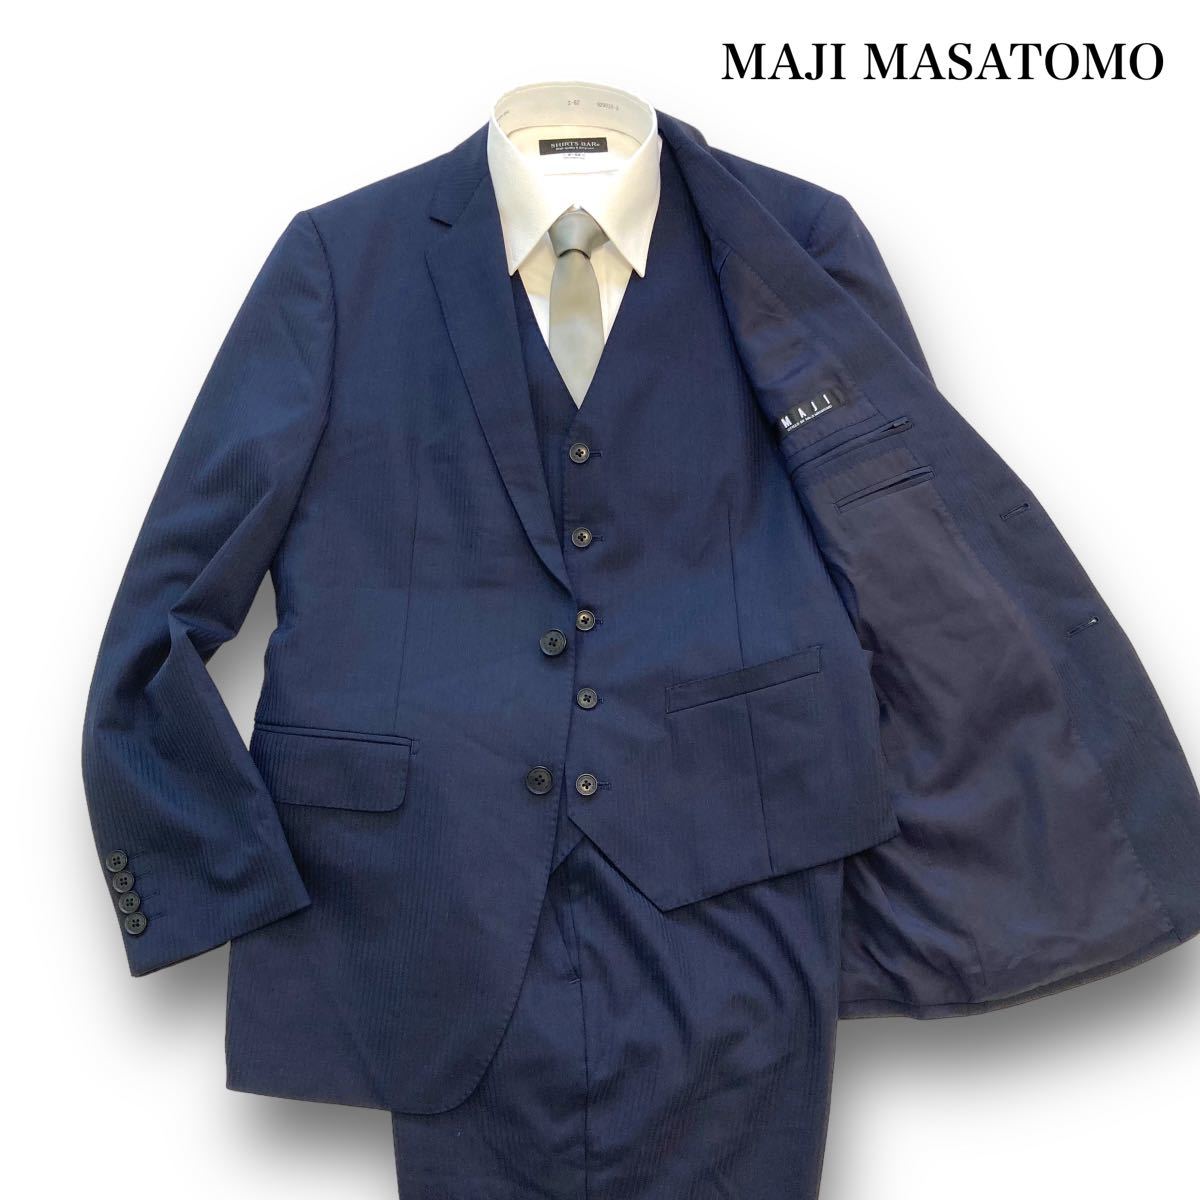 【MAJI MASATOMO】AOKI アオキ スリーピーススーツ セットアップ ストライプ セットアップスーツ ネイビースーツ シルクブレンド  (A5)